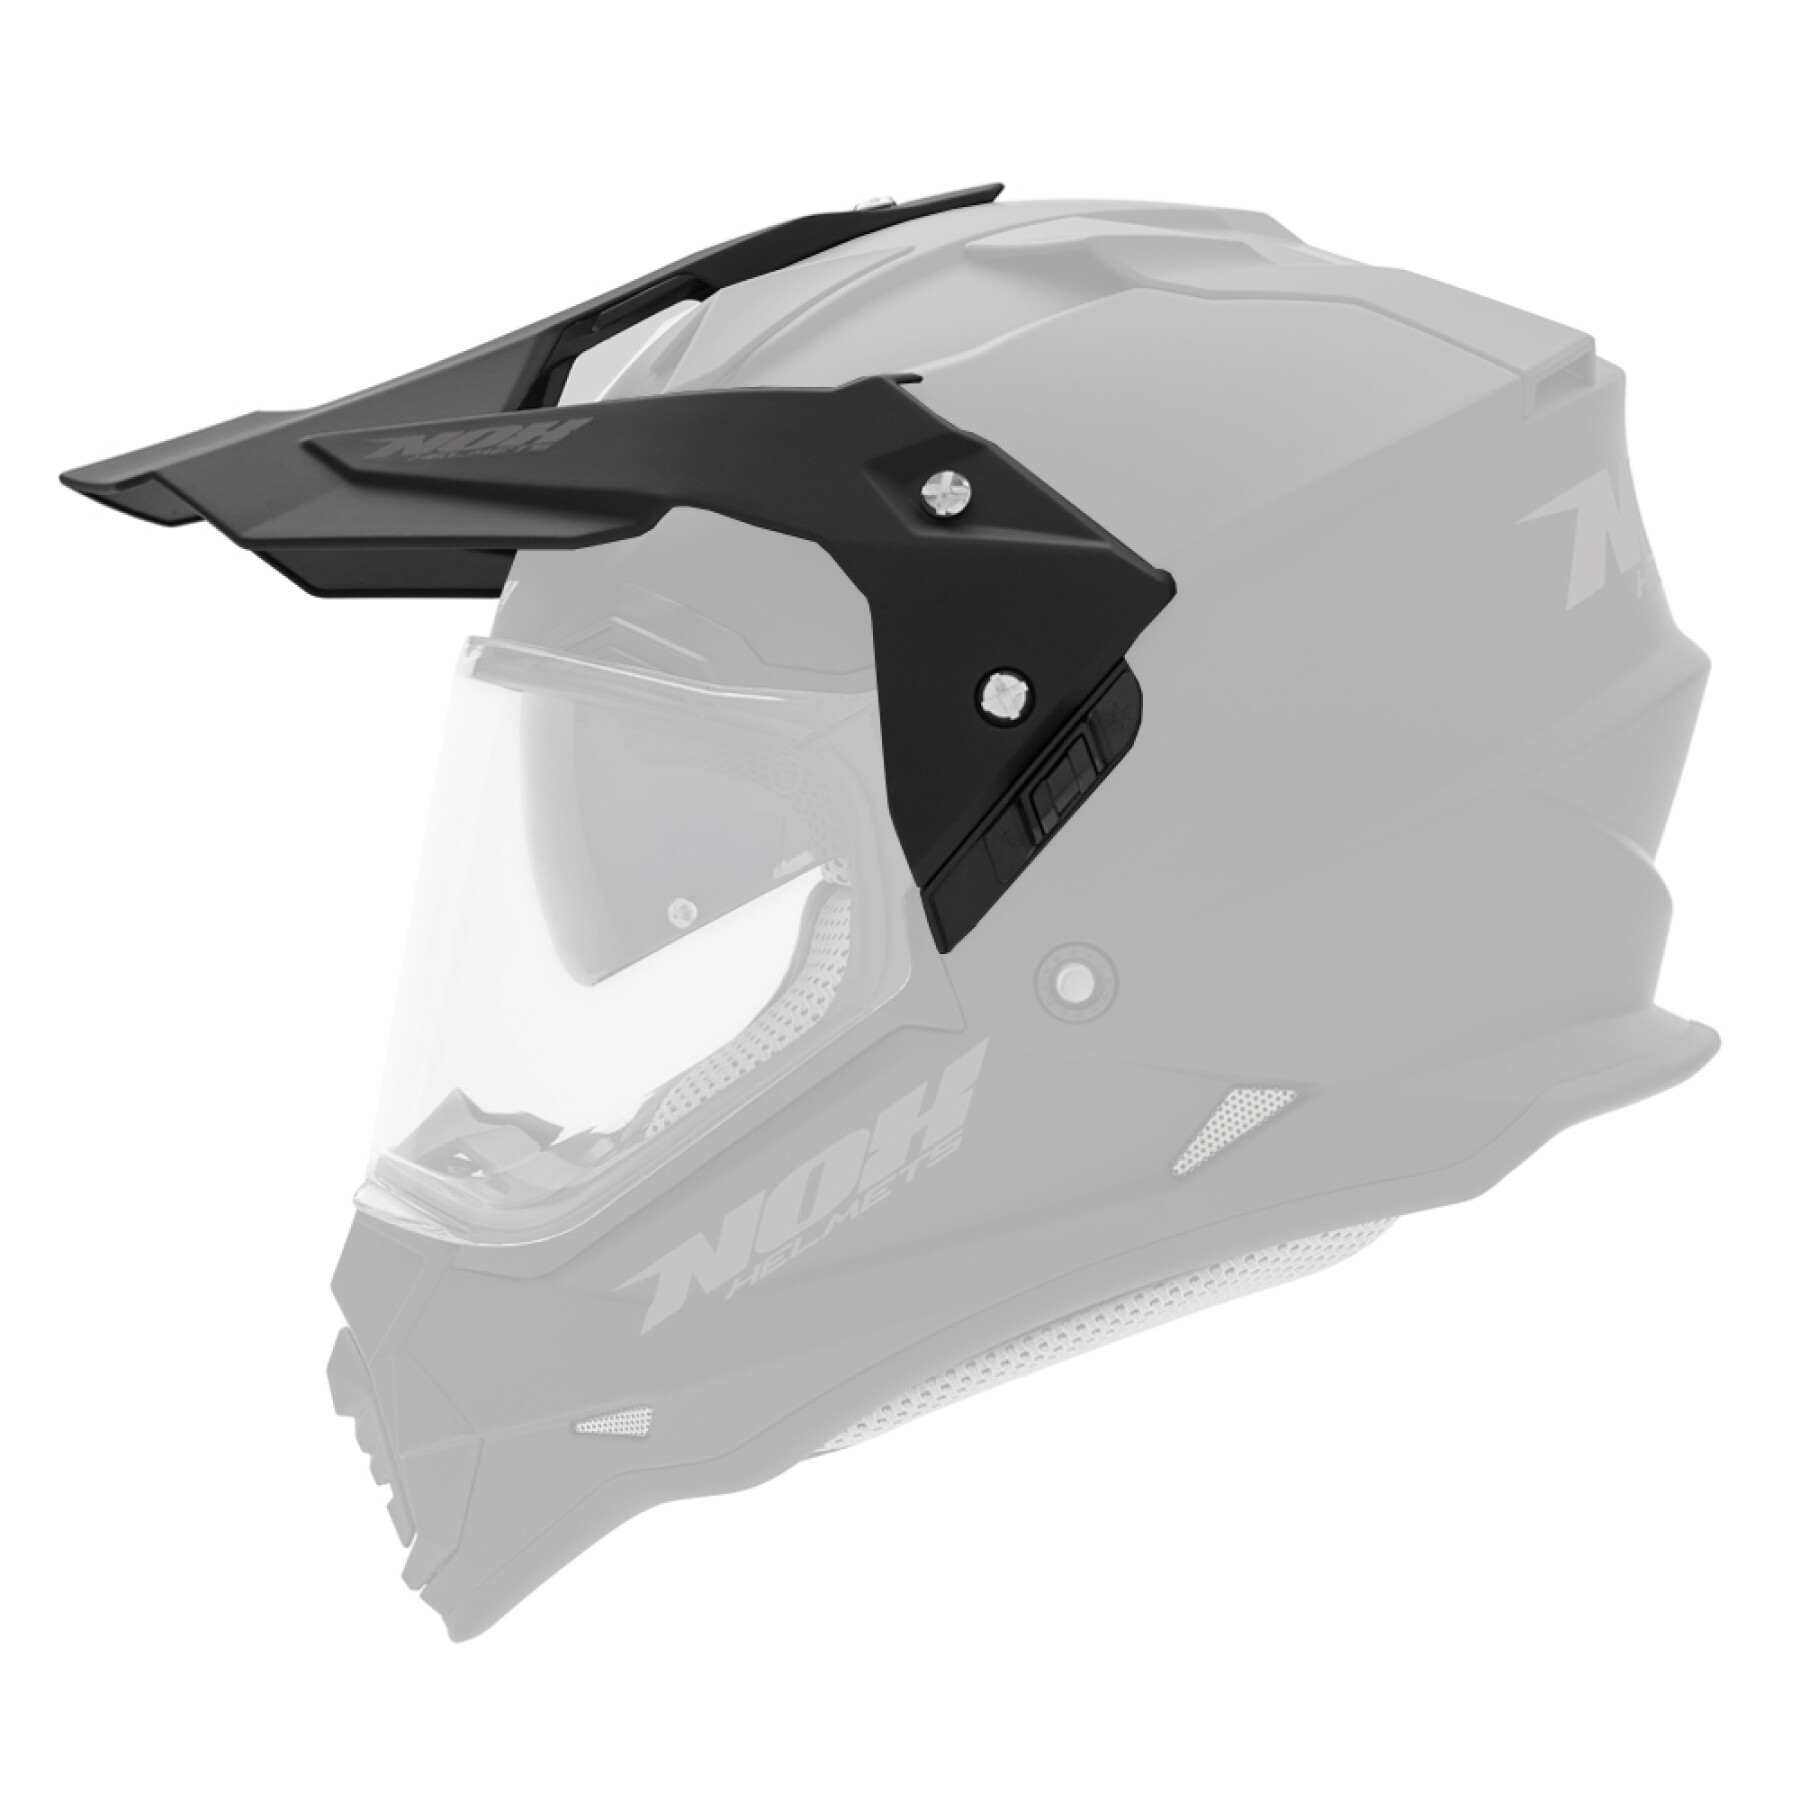 Viseira para capacete de motocross Nox 312